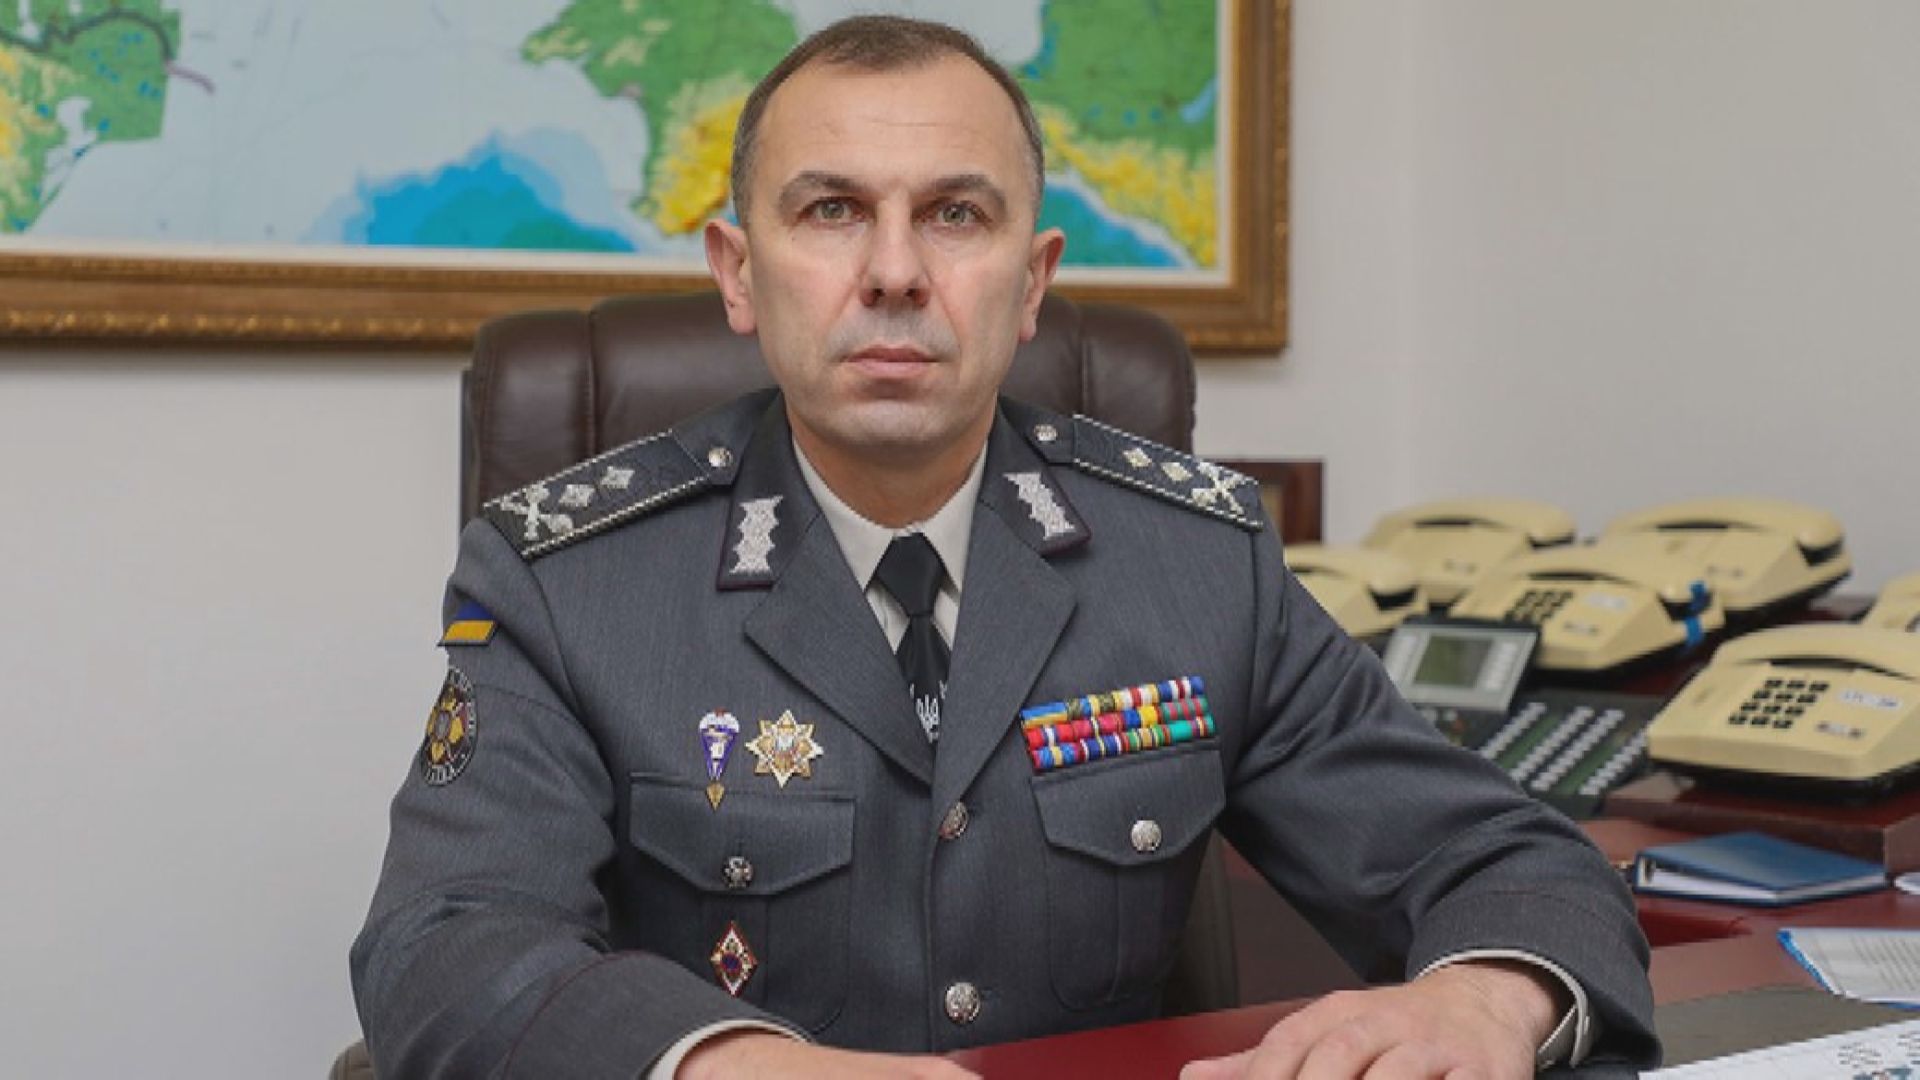 烏克蘭國家保衛局局長被解職